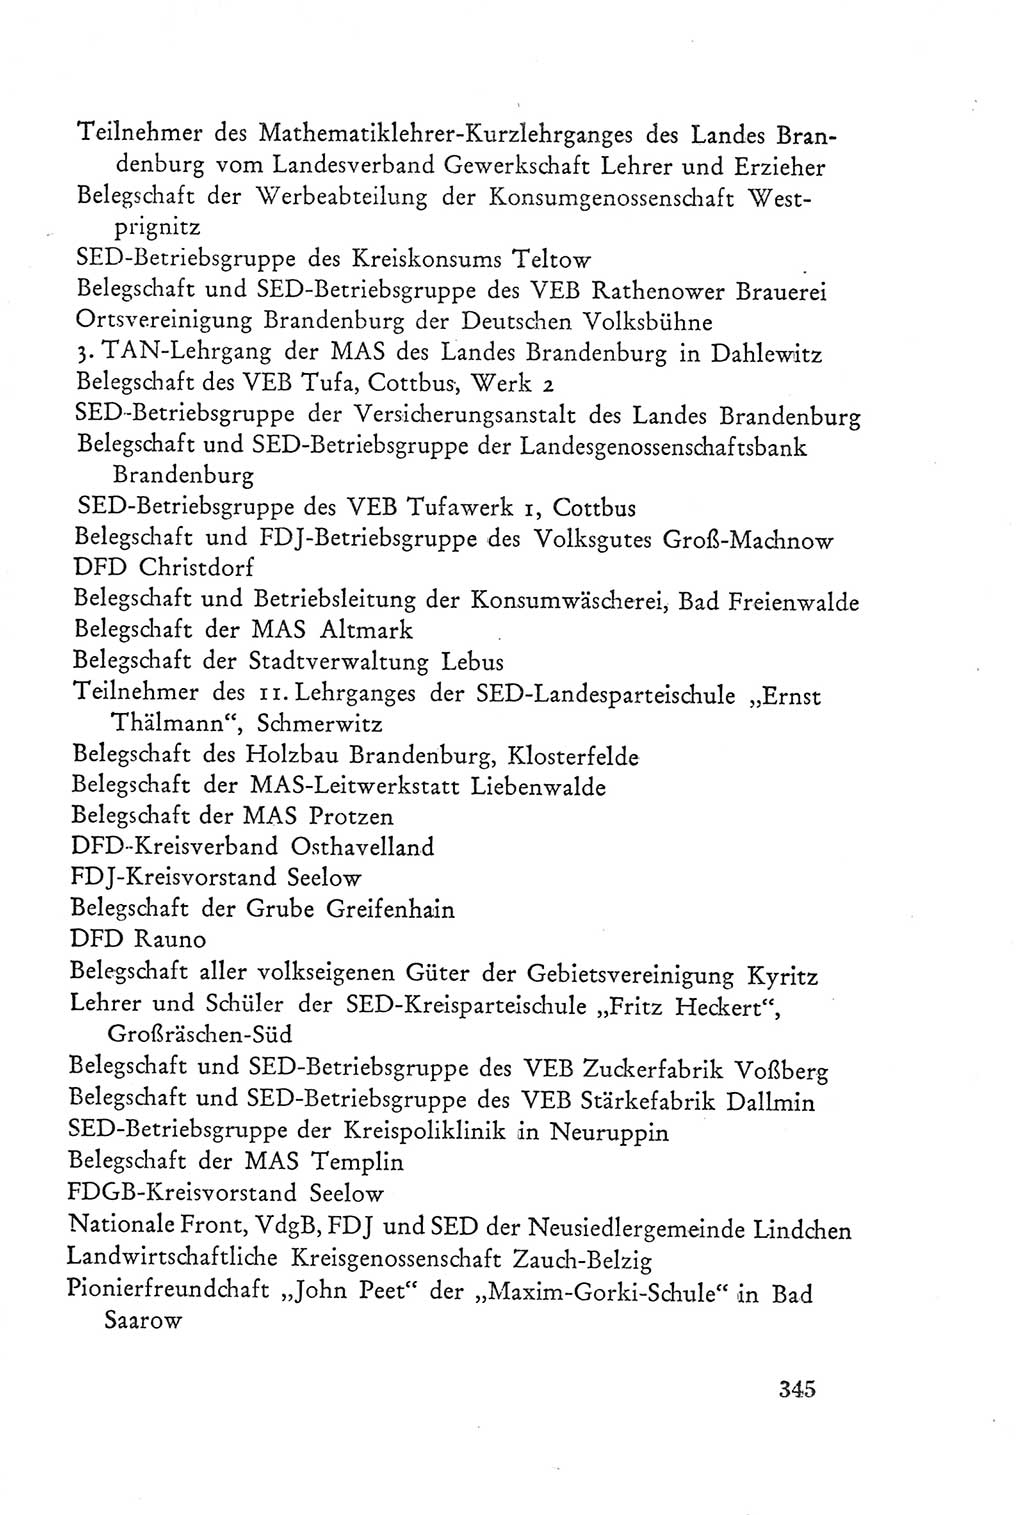 Protokoll der Verhandlungen des Ⅲ. Parteitages der Sozialistischen Einheitspartei Deutschlands (SED) [Deutsche Demokratische Republik (DDR)] 1950, Band 2, Seite 345 (Prot. Verh. Ⅲ. PT SED DDR 1950, Bd. 2, S. 345)